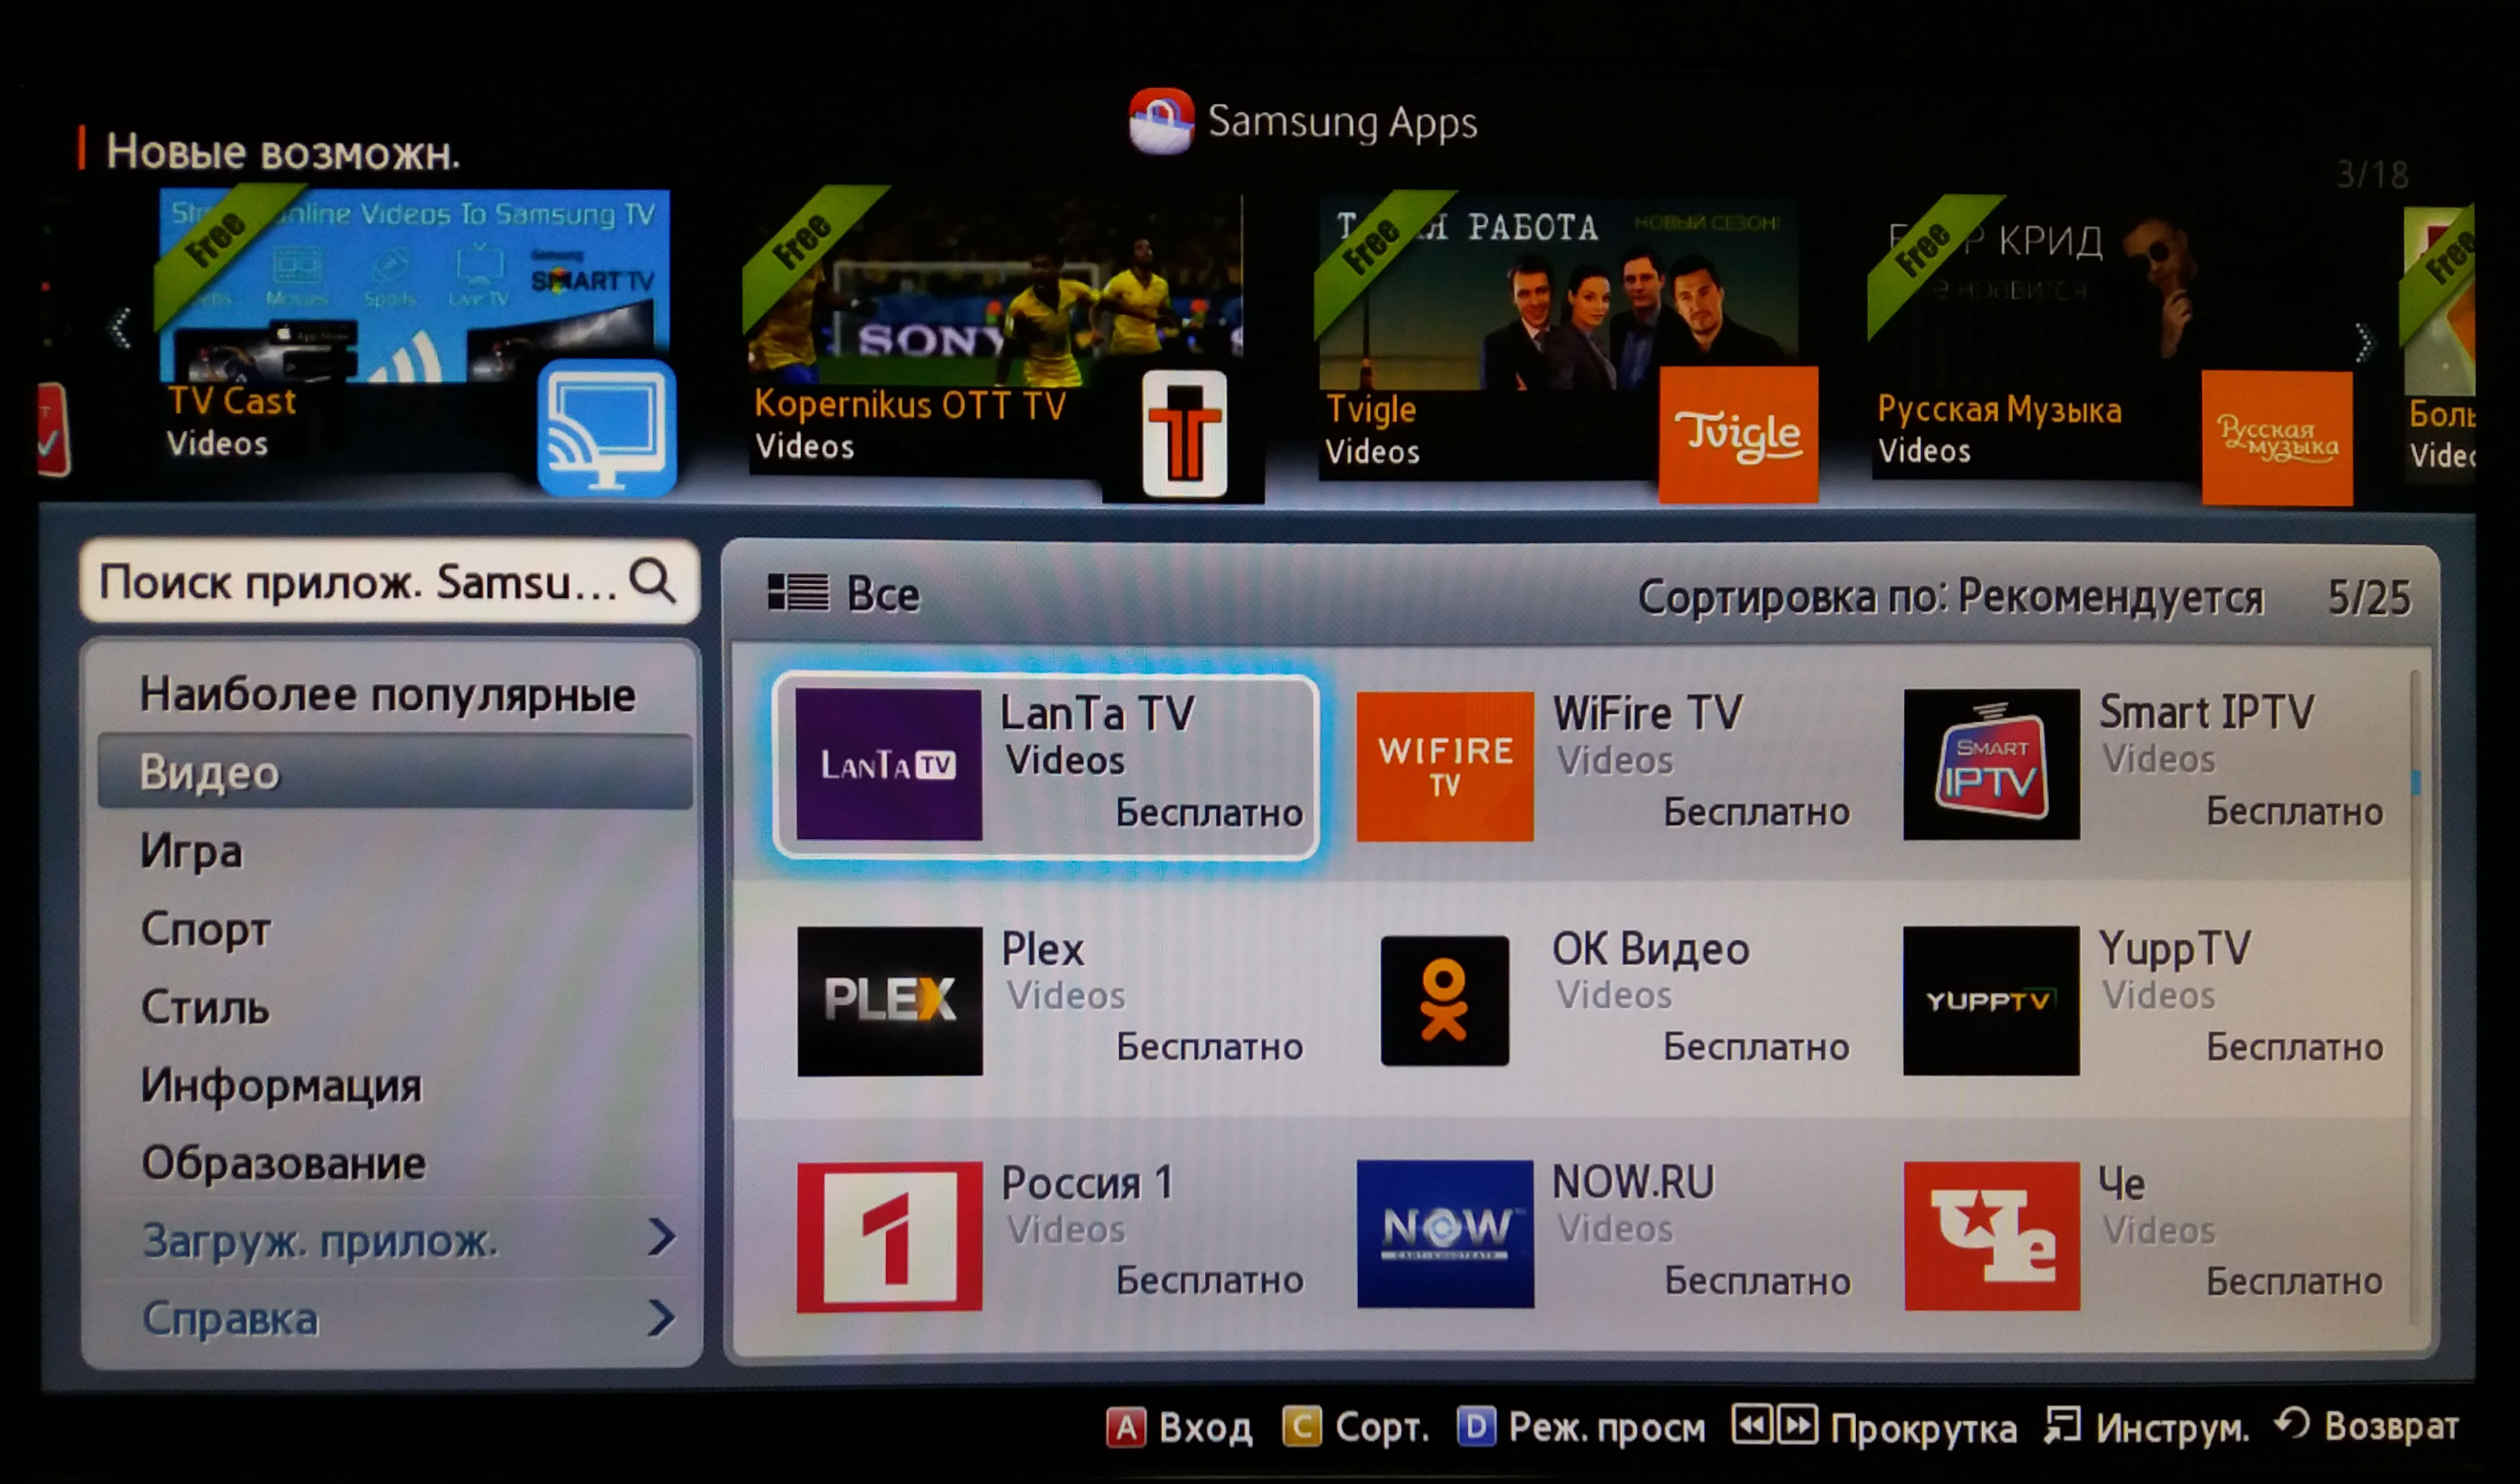 Как установить кинопоиск на самсунг смарт тв. Samsung Smart TV приложения. Samsung apps для Smart TV. IPTV на смарт телевизоре. Samsung apps на телевизоре.